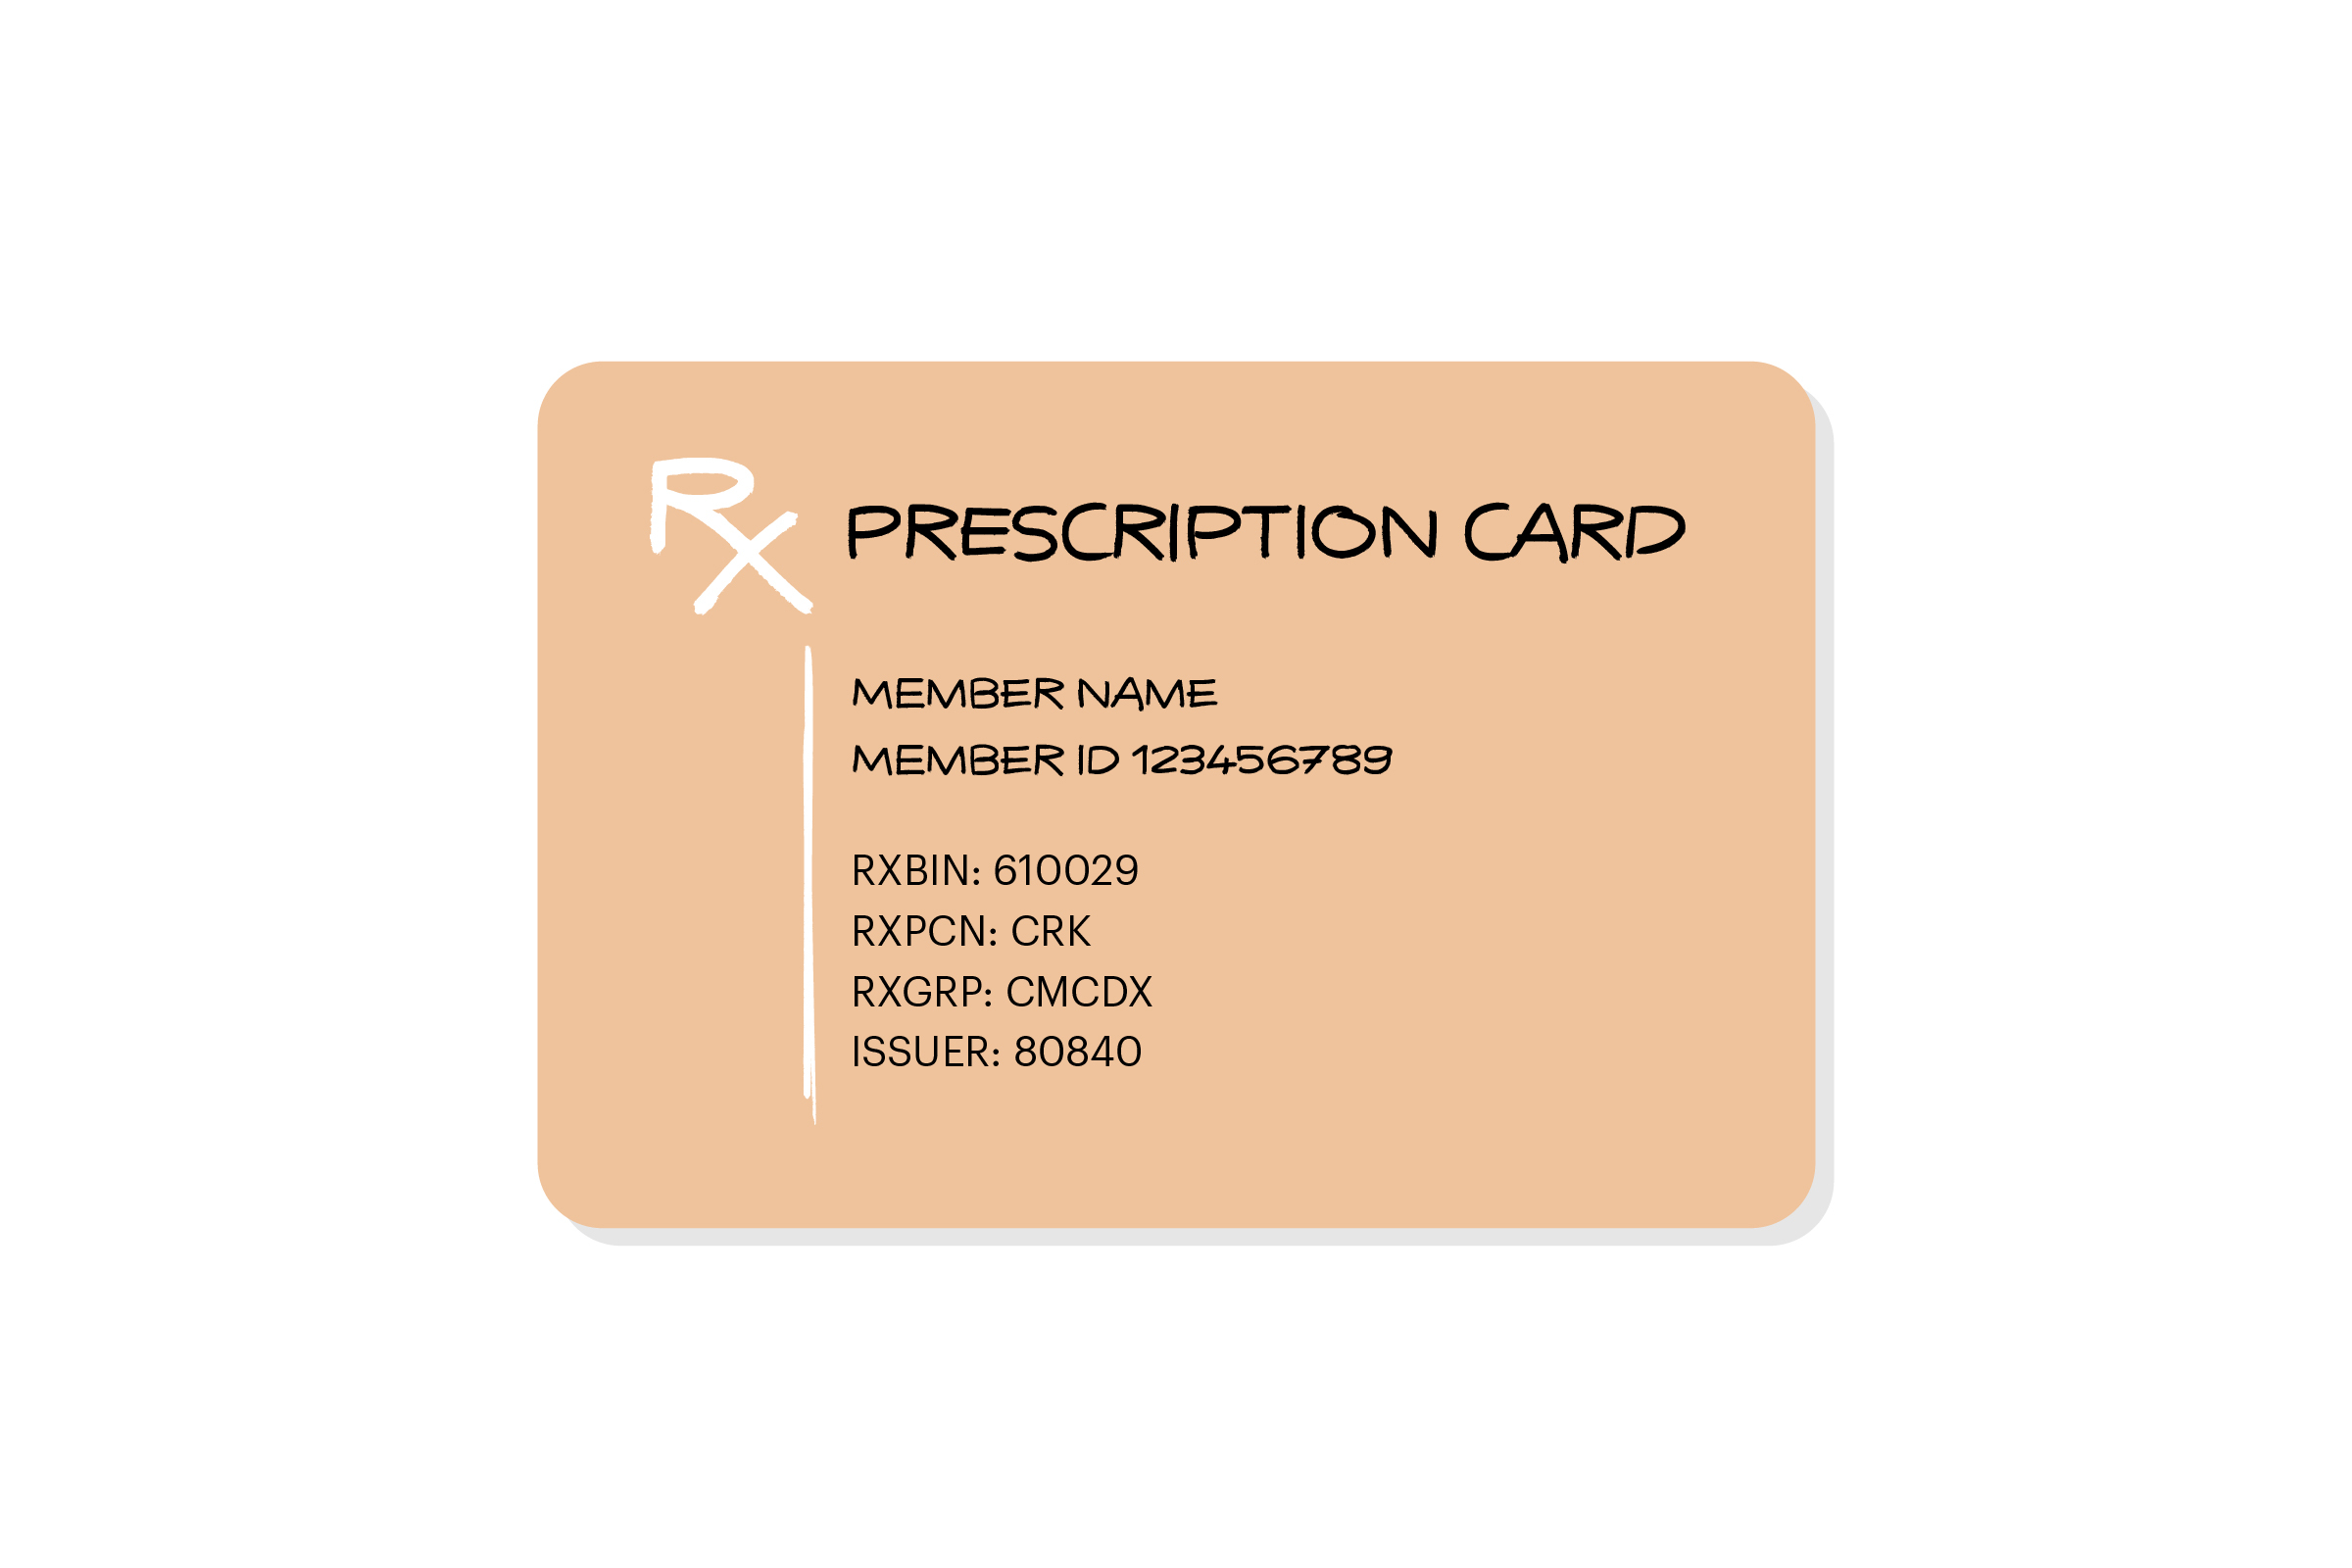 What Is Rxbin On An Insurance Card?